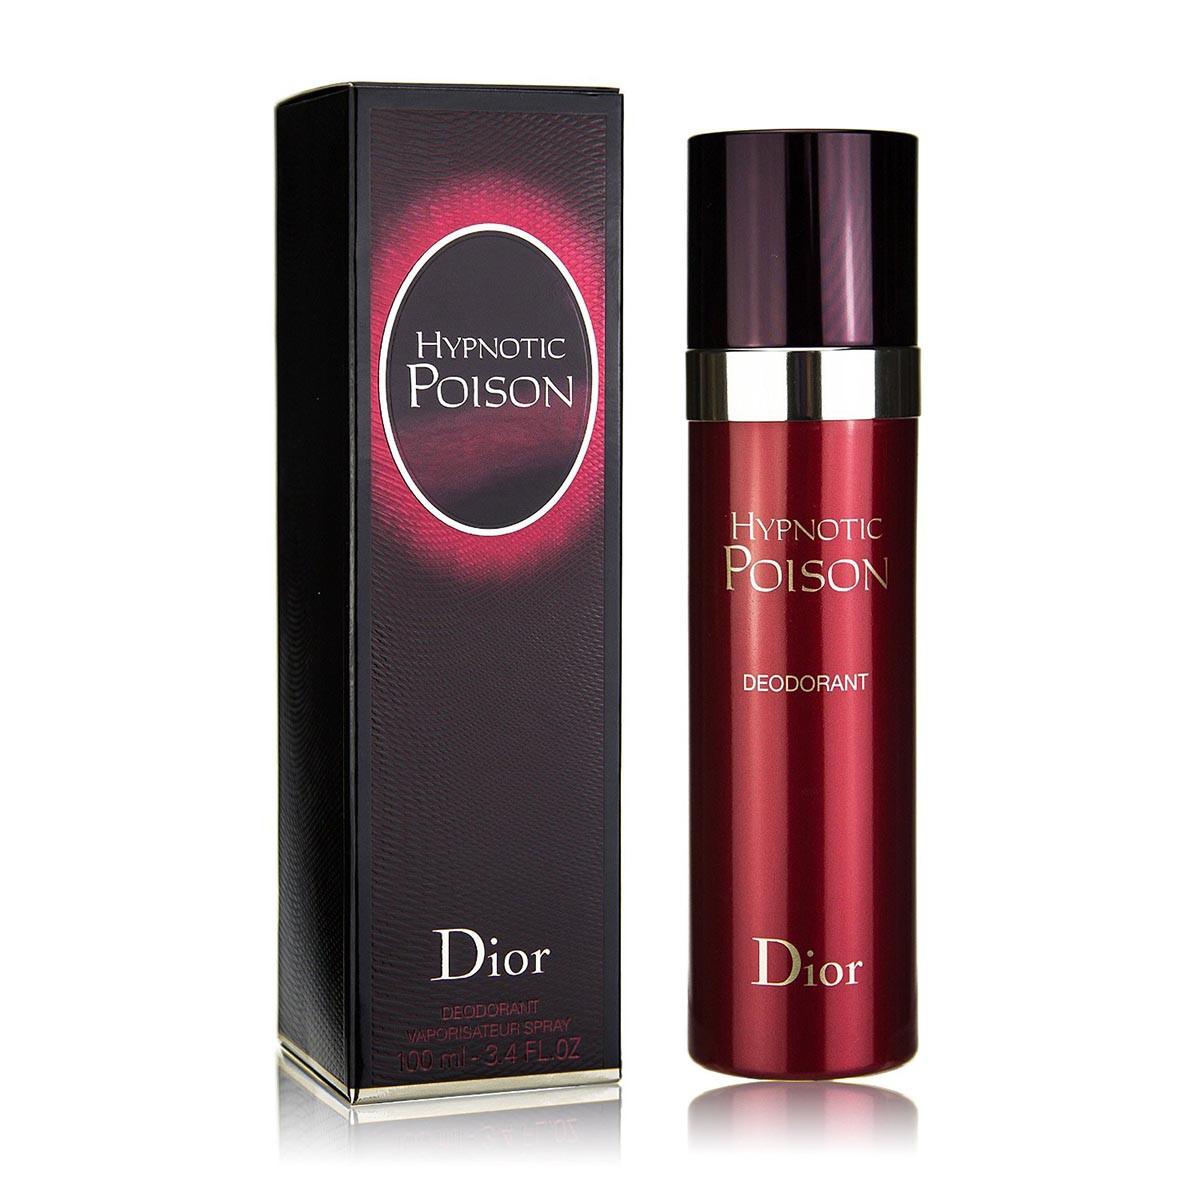 dior-desodorante-hypnotic-poison-100ml